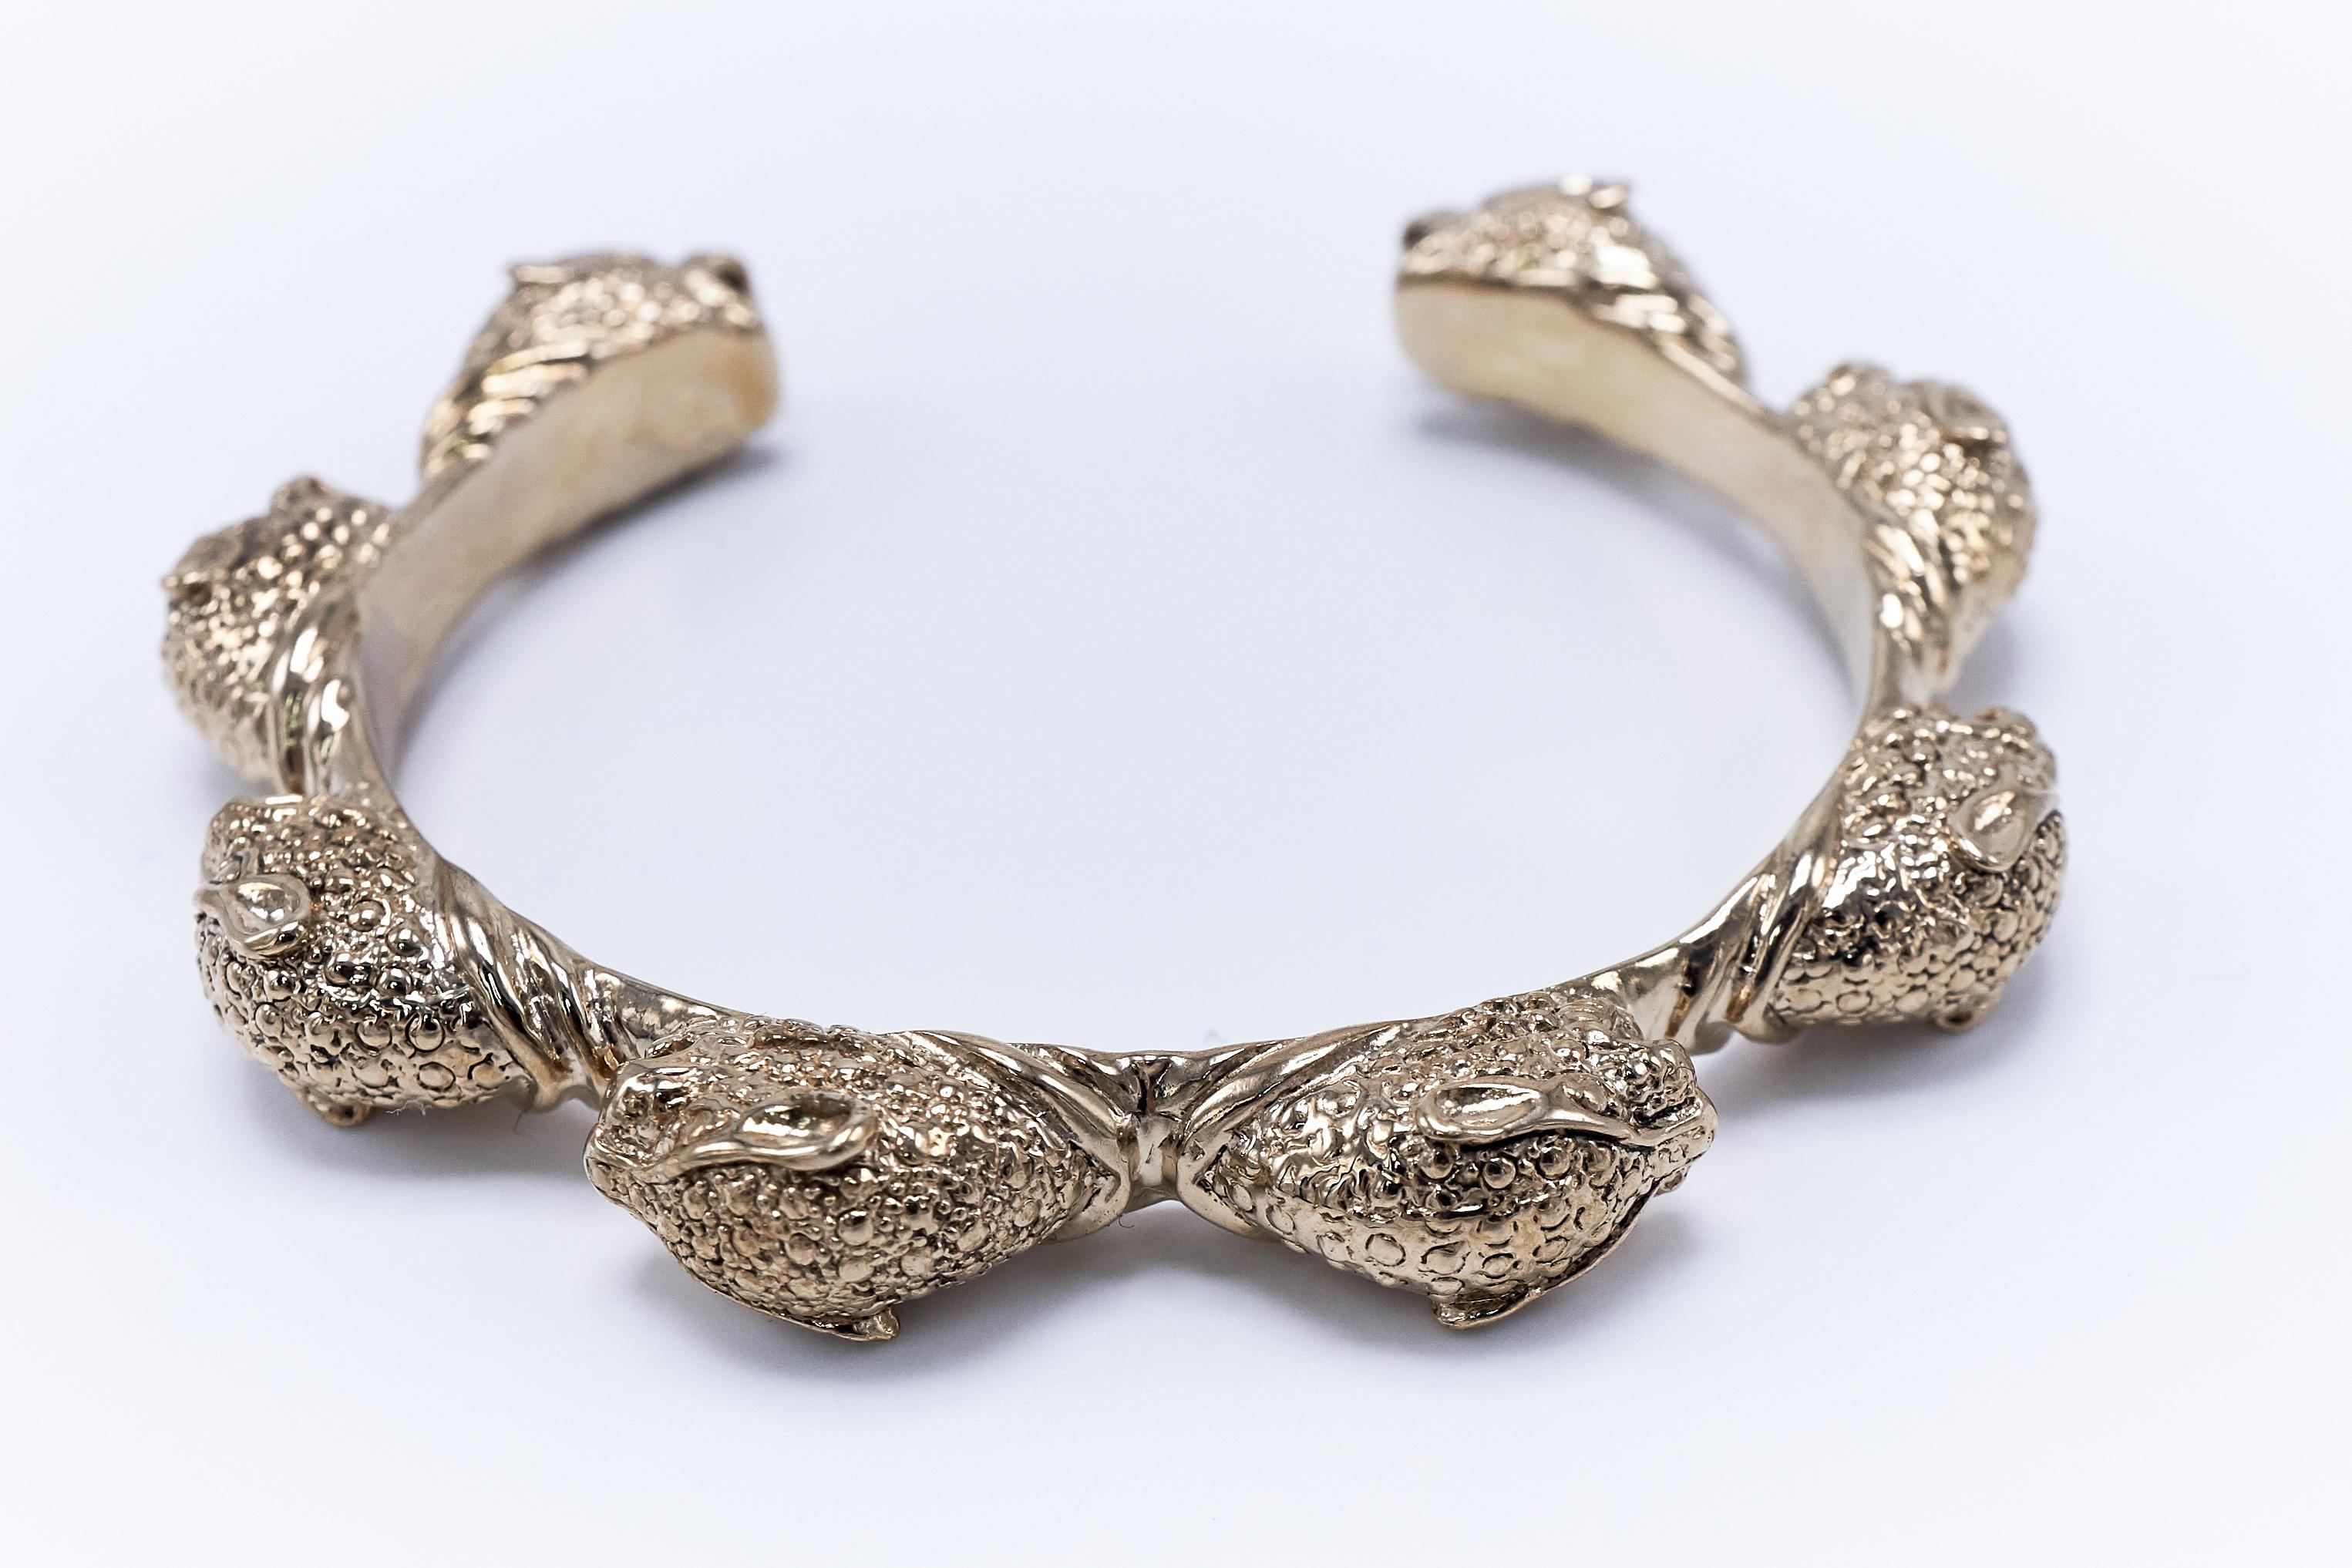 Art Nouveau Emerald Jaguar Arm Cuff Bracelet Statement Bronze Animal Jewelry J Dauphin